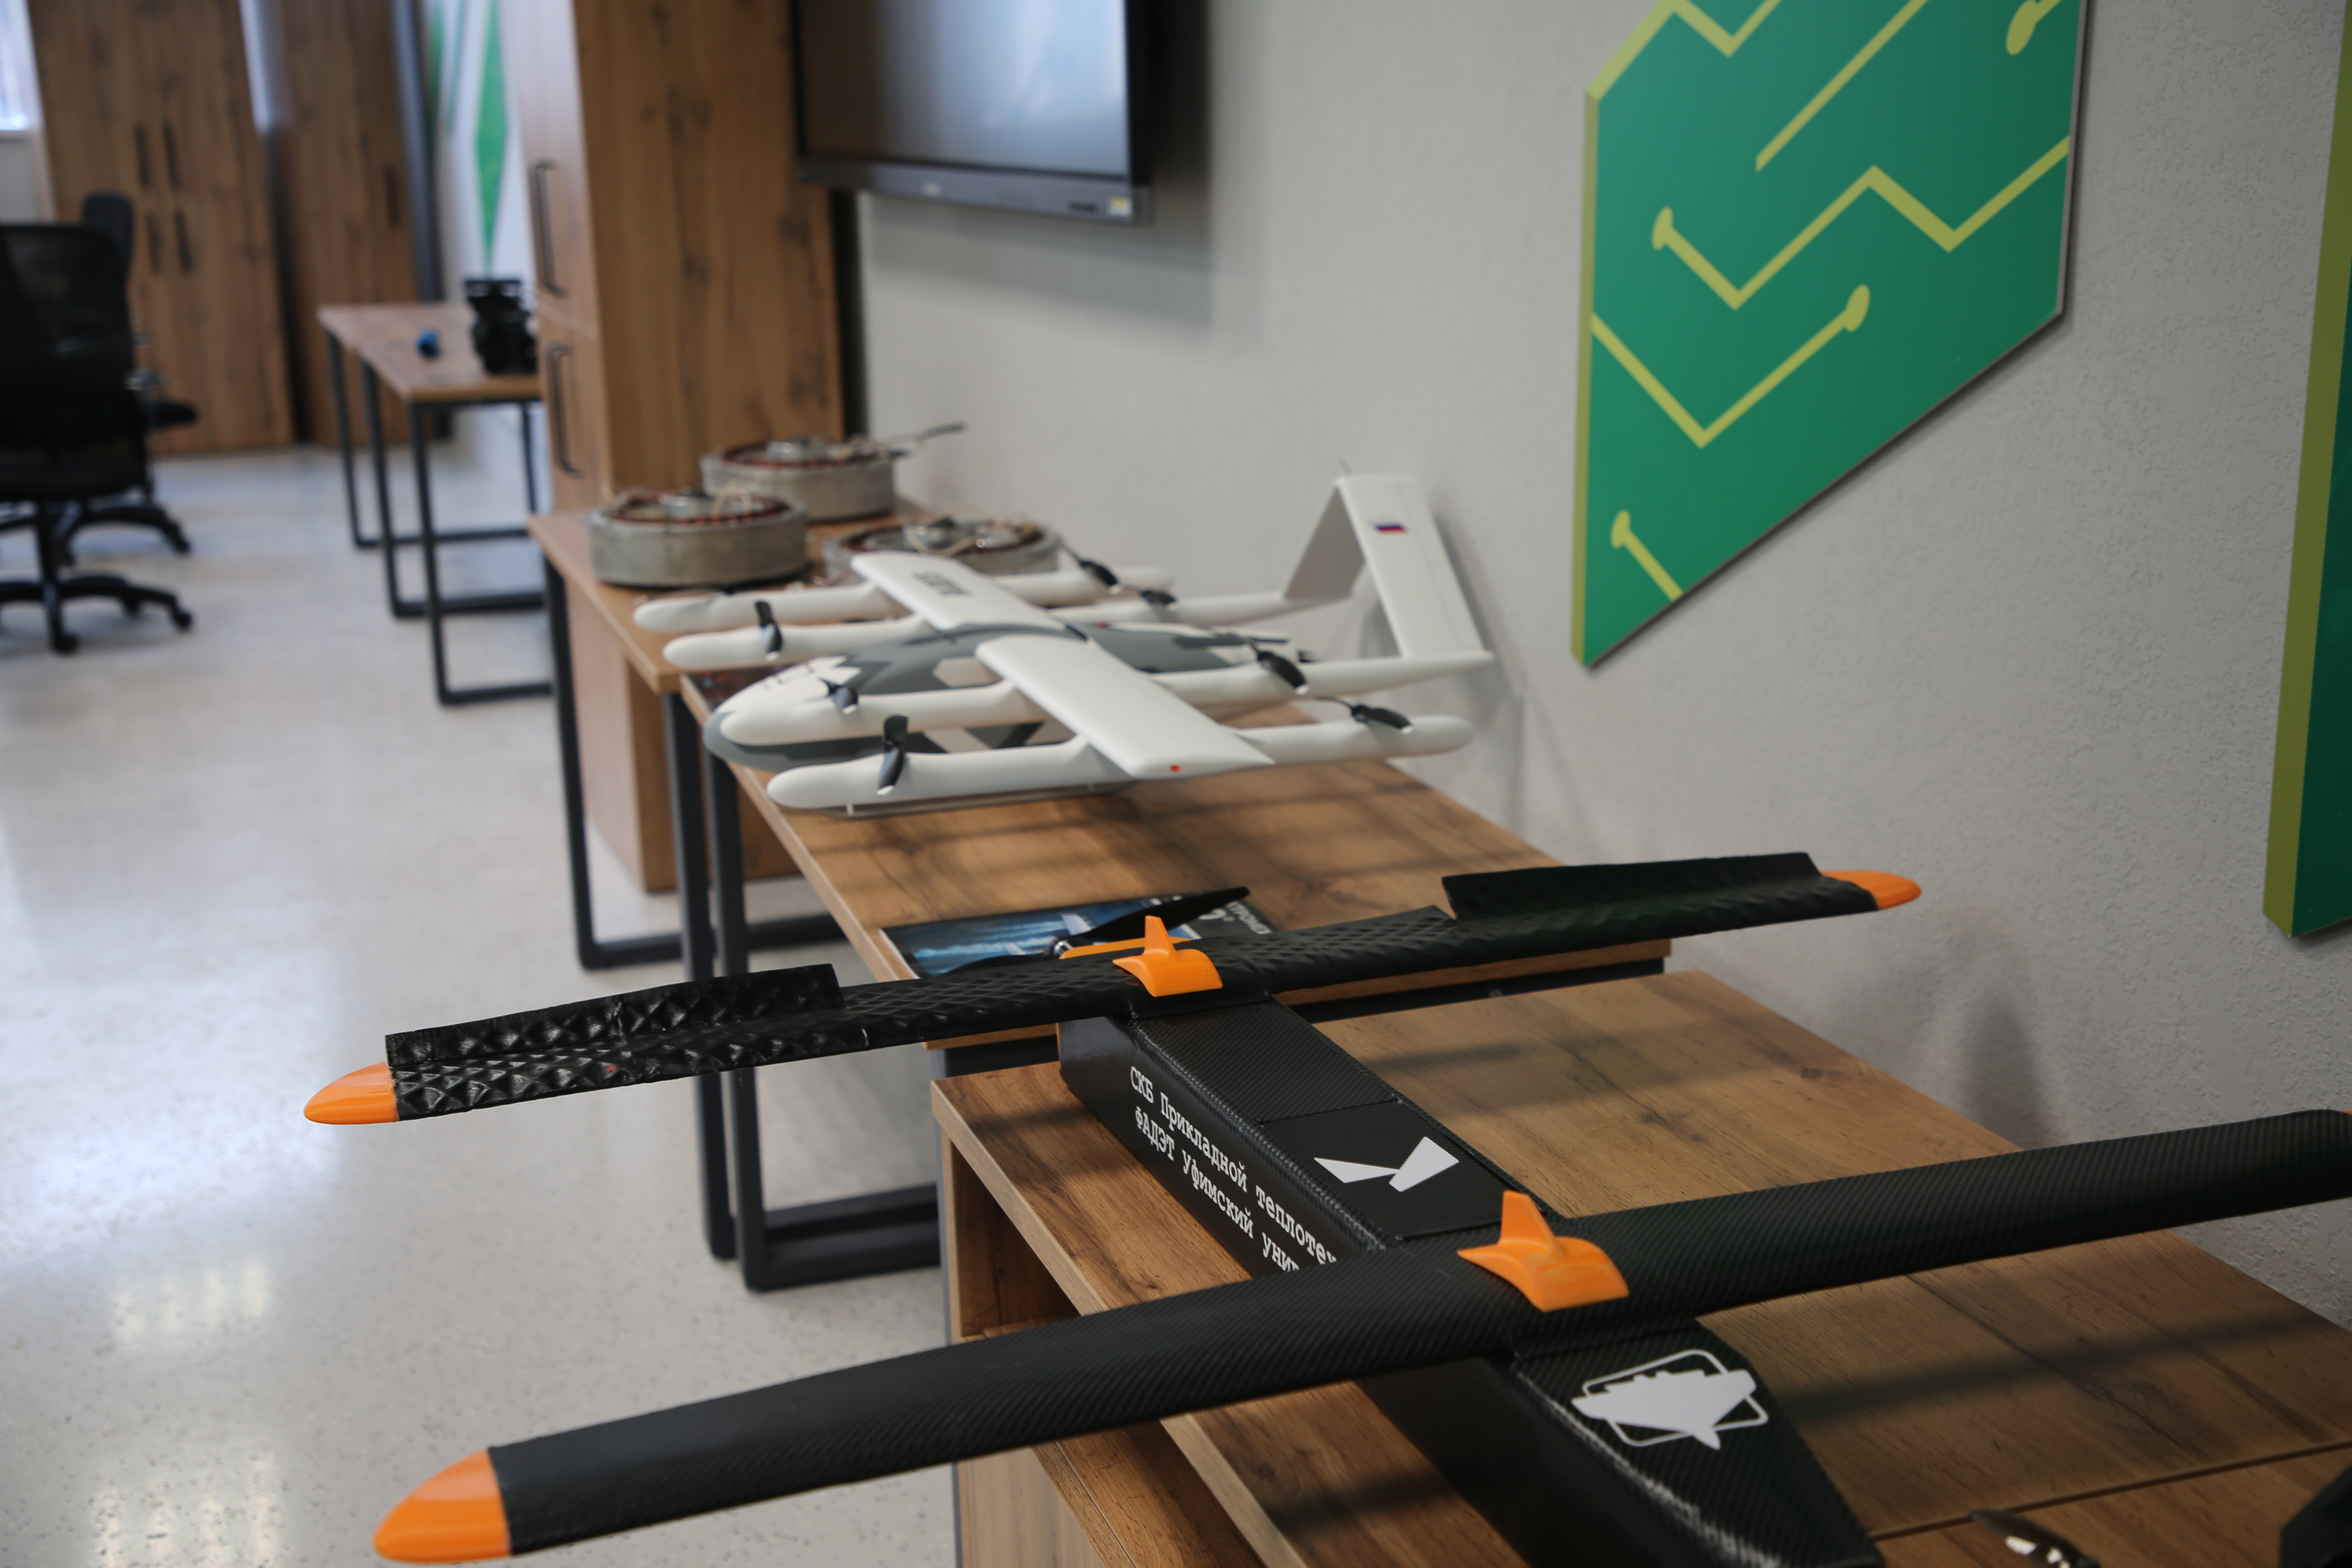 Передовая инженерная школа УУНиТ открыла новую лабораторию в межвузовском кампусе Уфы